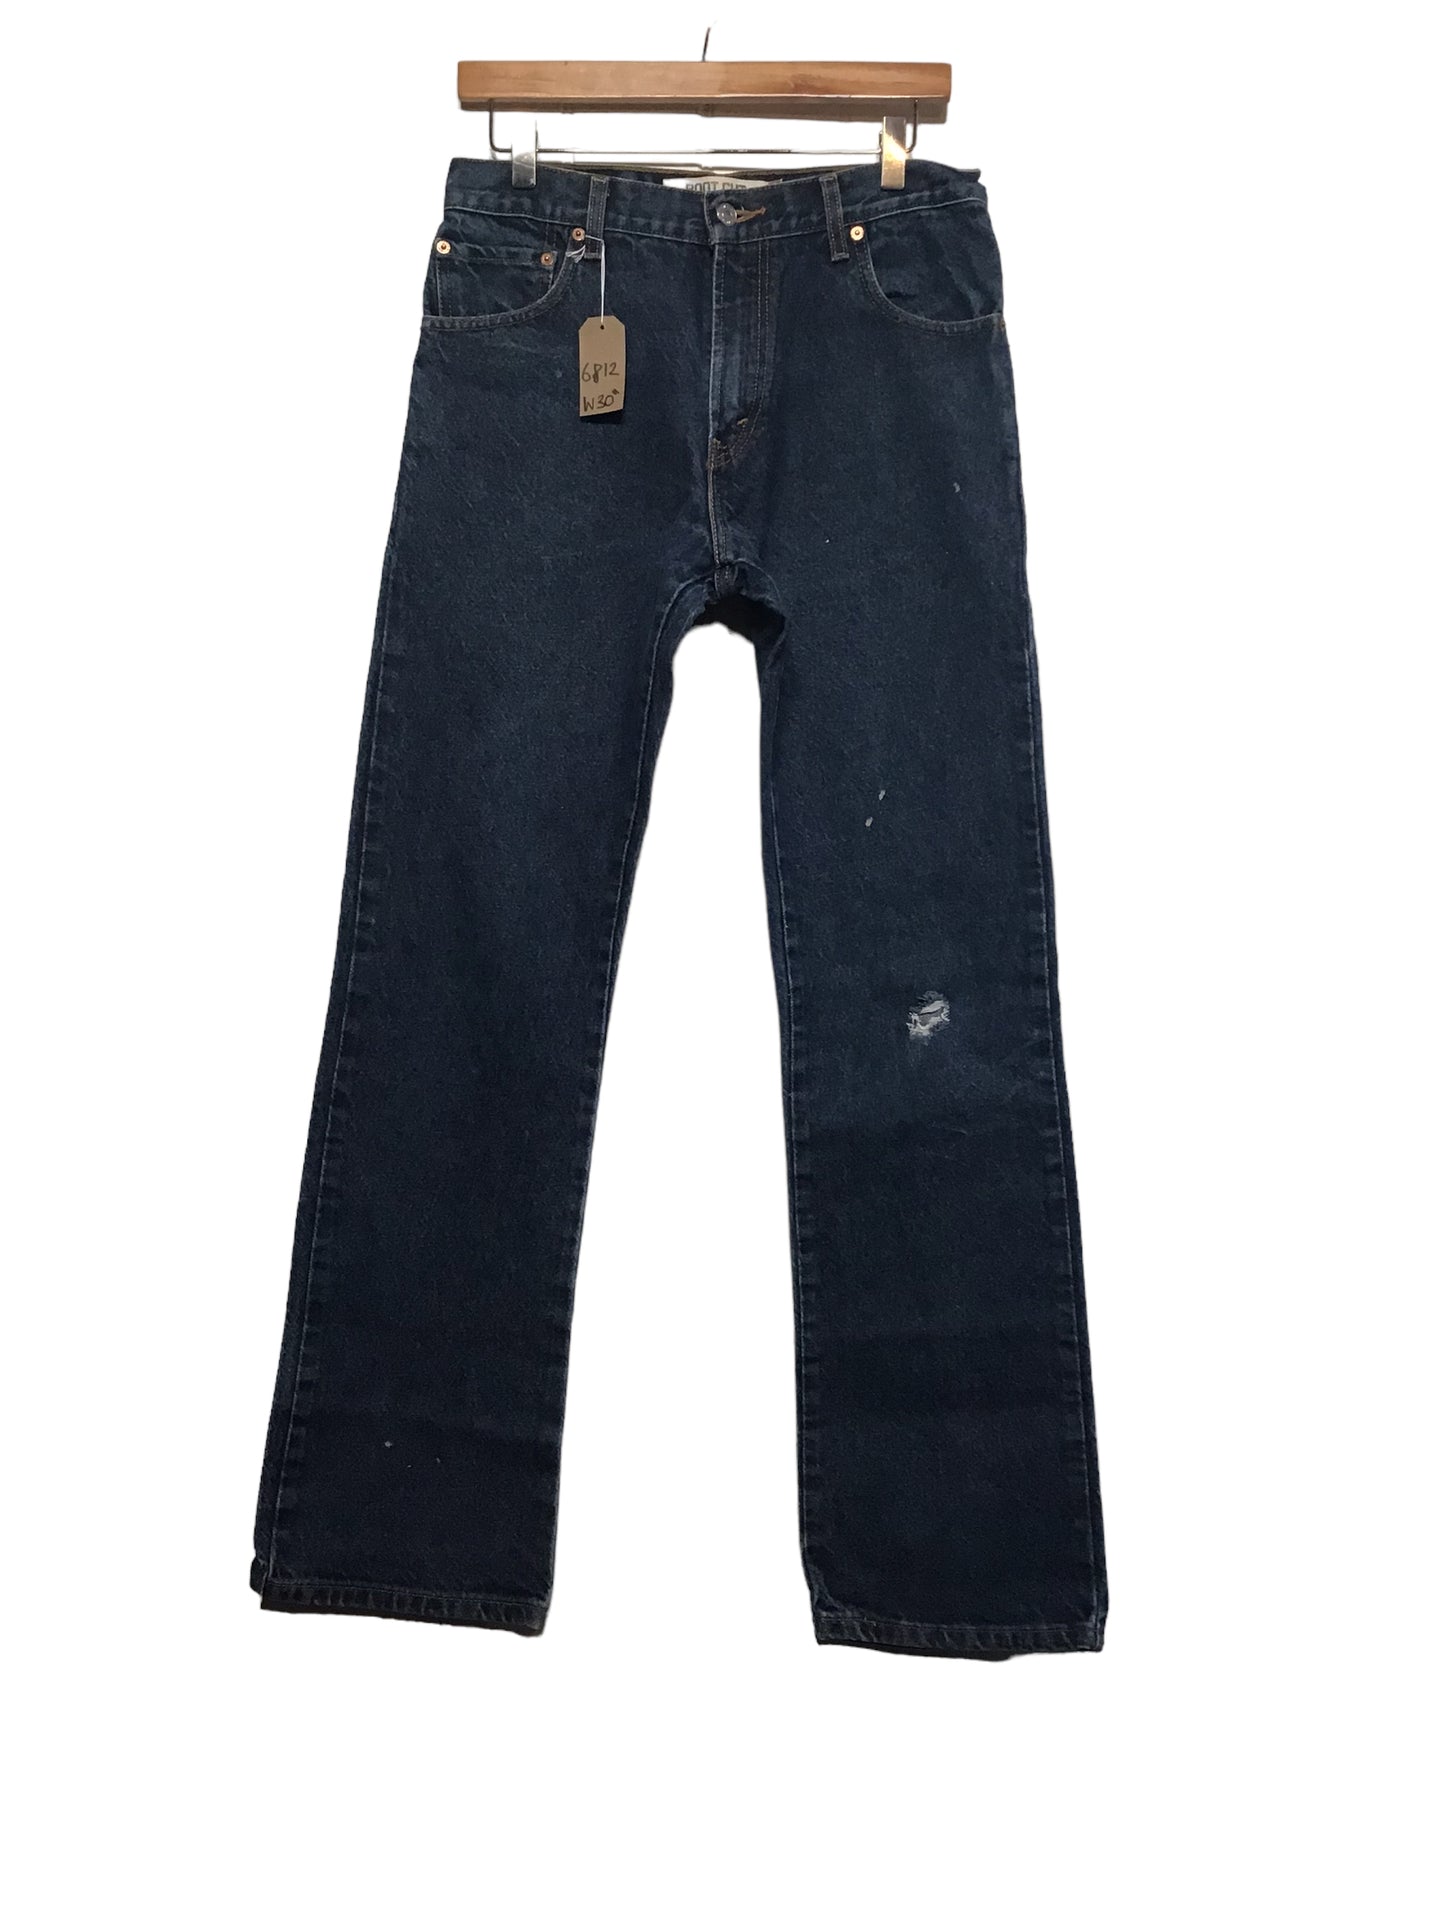 Levi 517 Jeans (30x32)